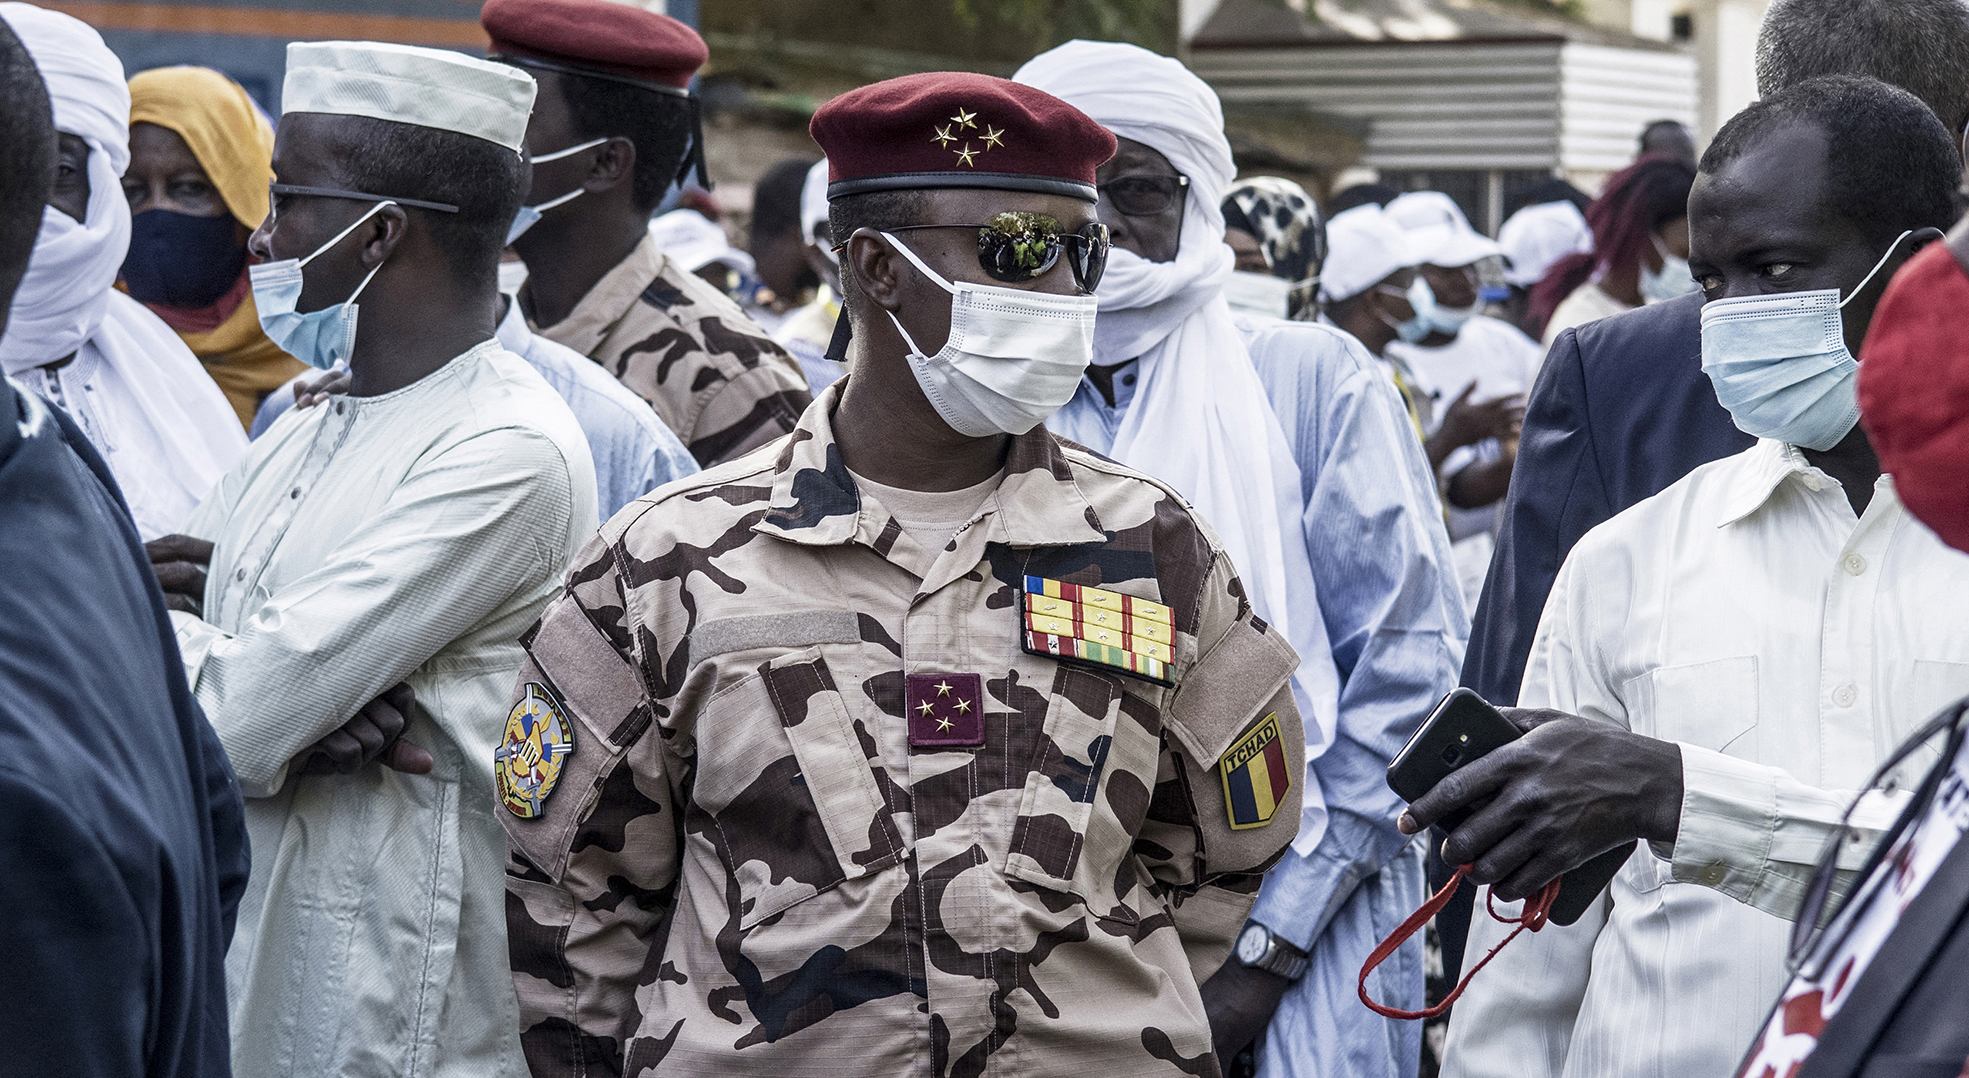 Chef du Conseil militaire de transition (CMT), Mahamat Idriss Déby occupe désormais la fonction de président de la République.